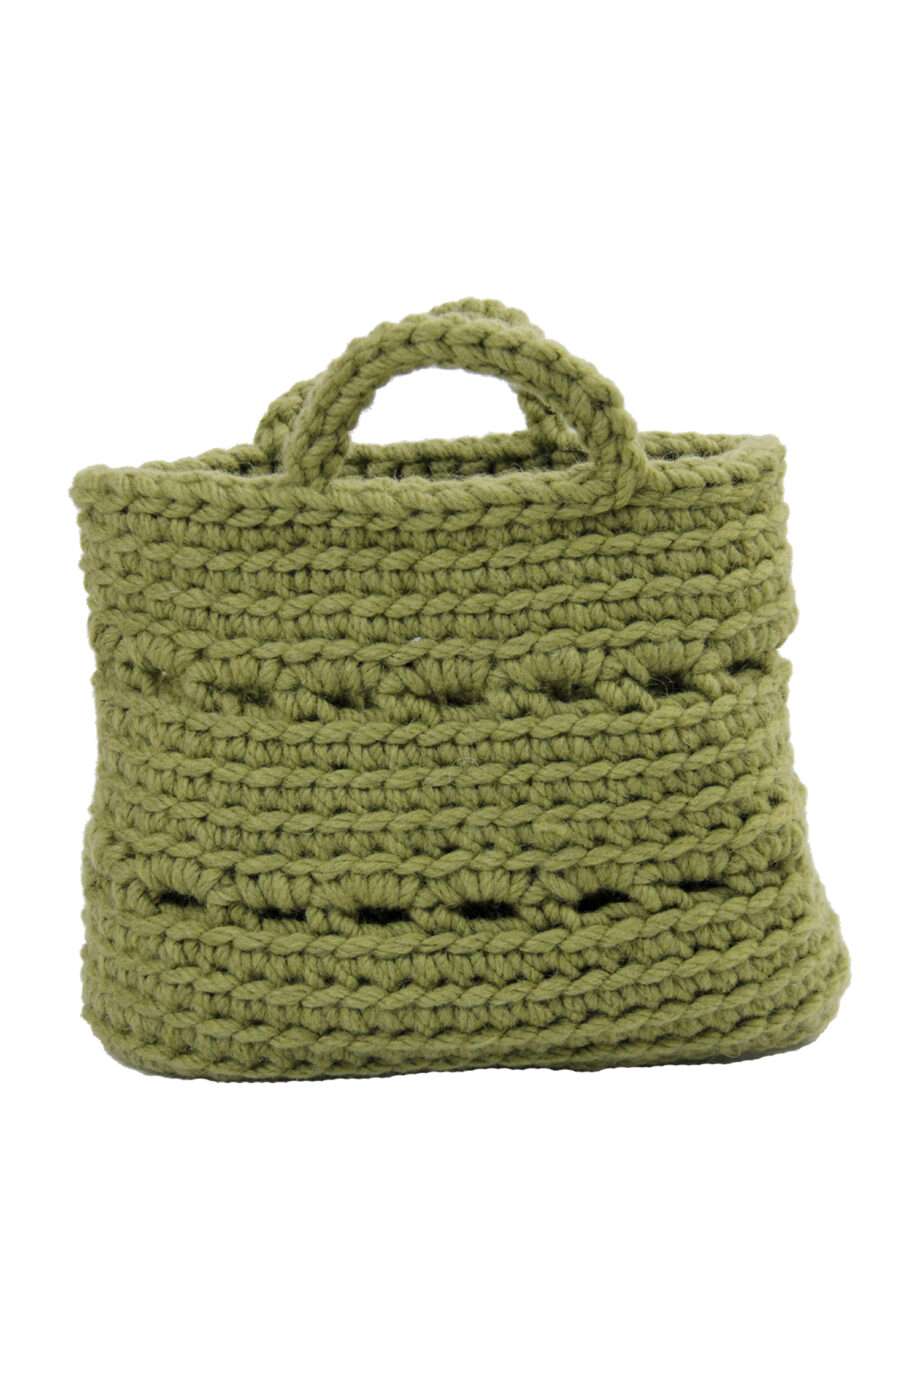 basic olive green crochet woolen basket large